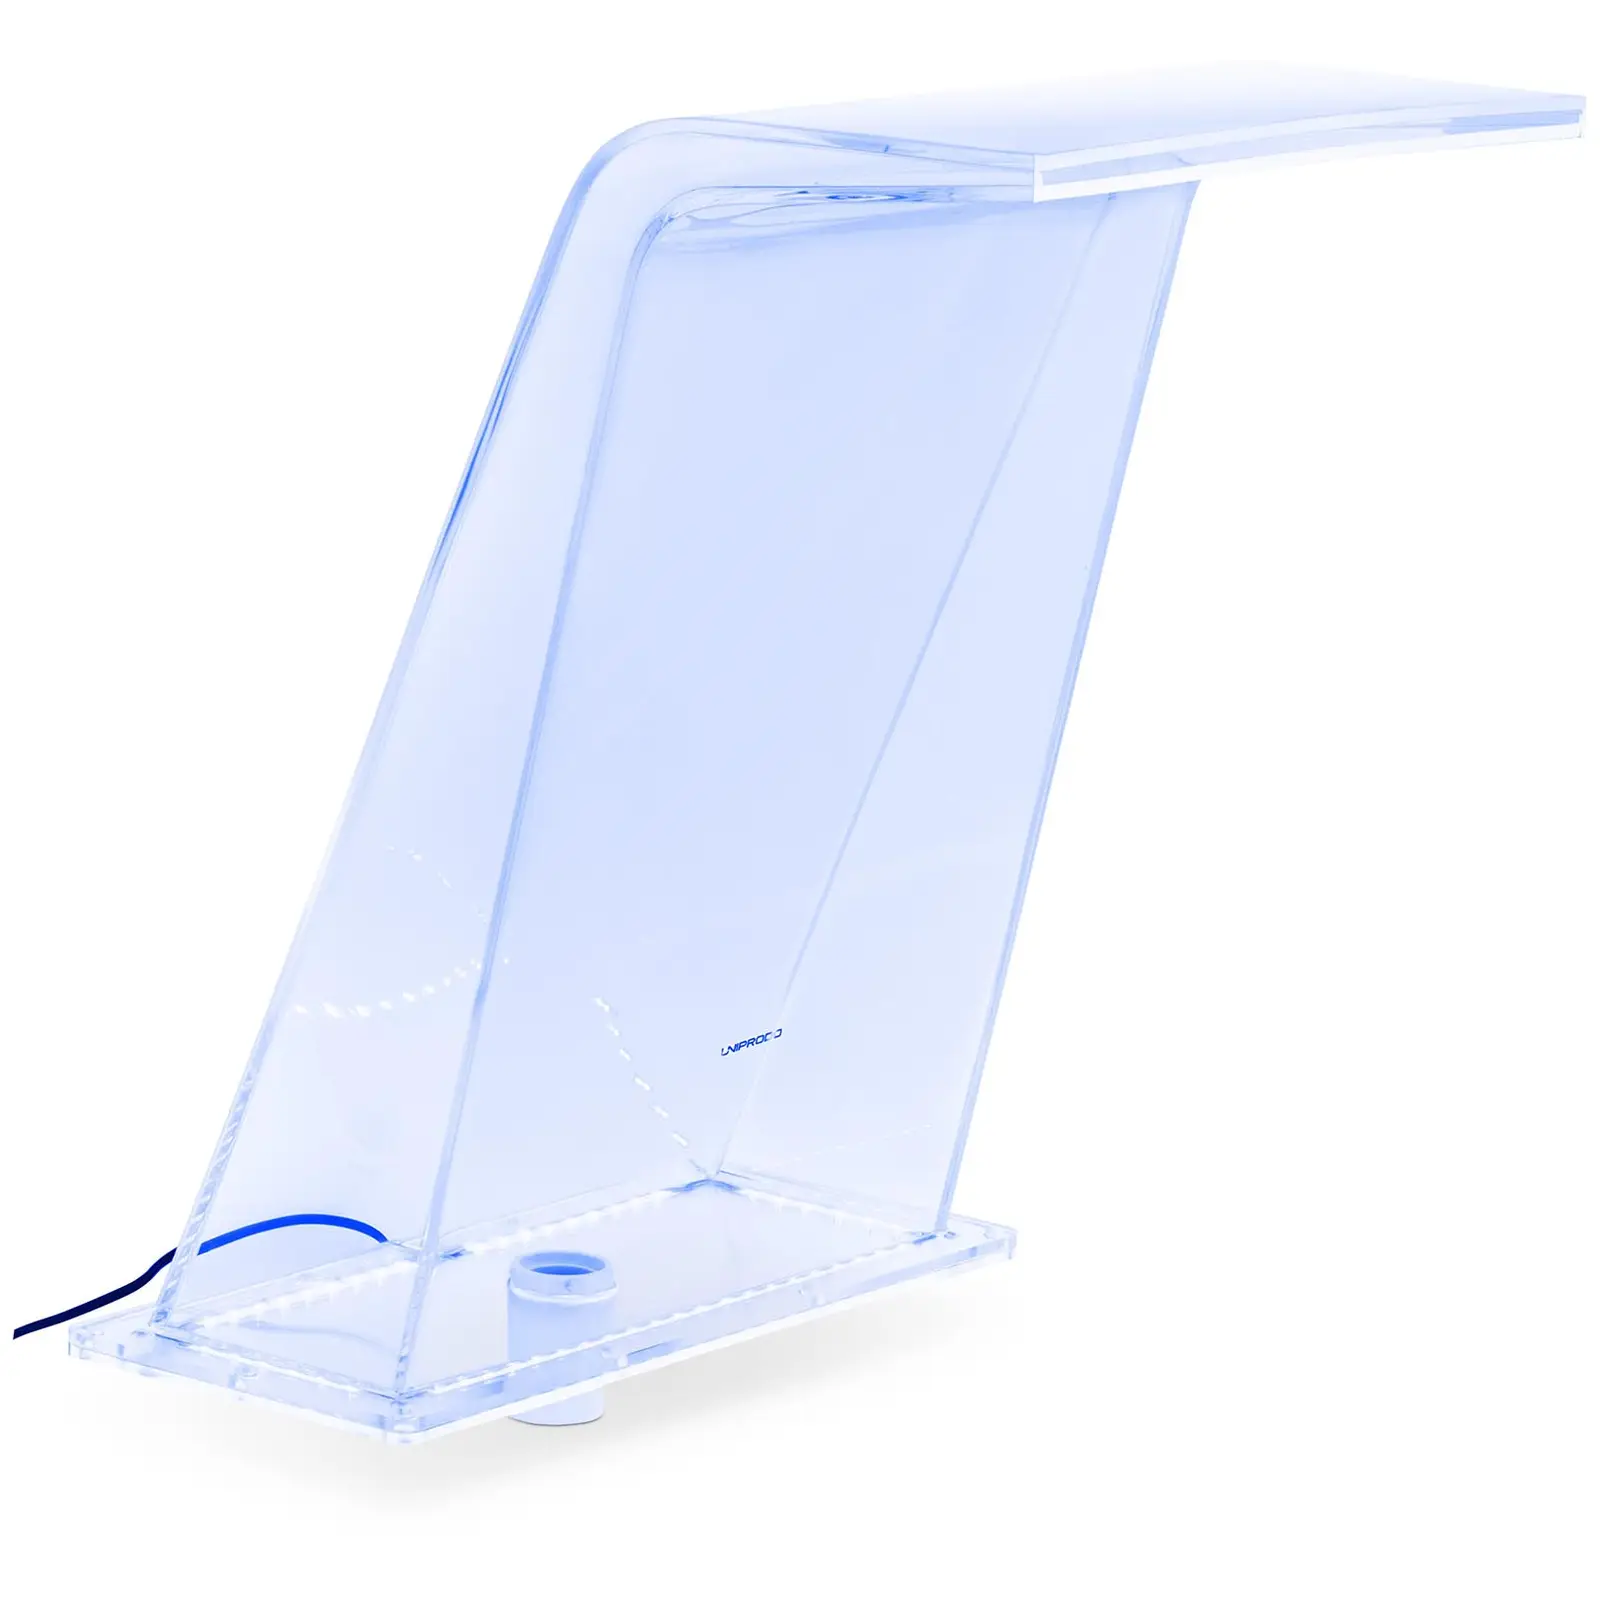 Schwalldusche - 45 cm - LED-Beleuchtung - Blau / Weiß - 395 mm Wasserauslauf